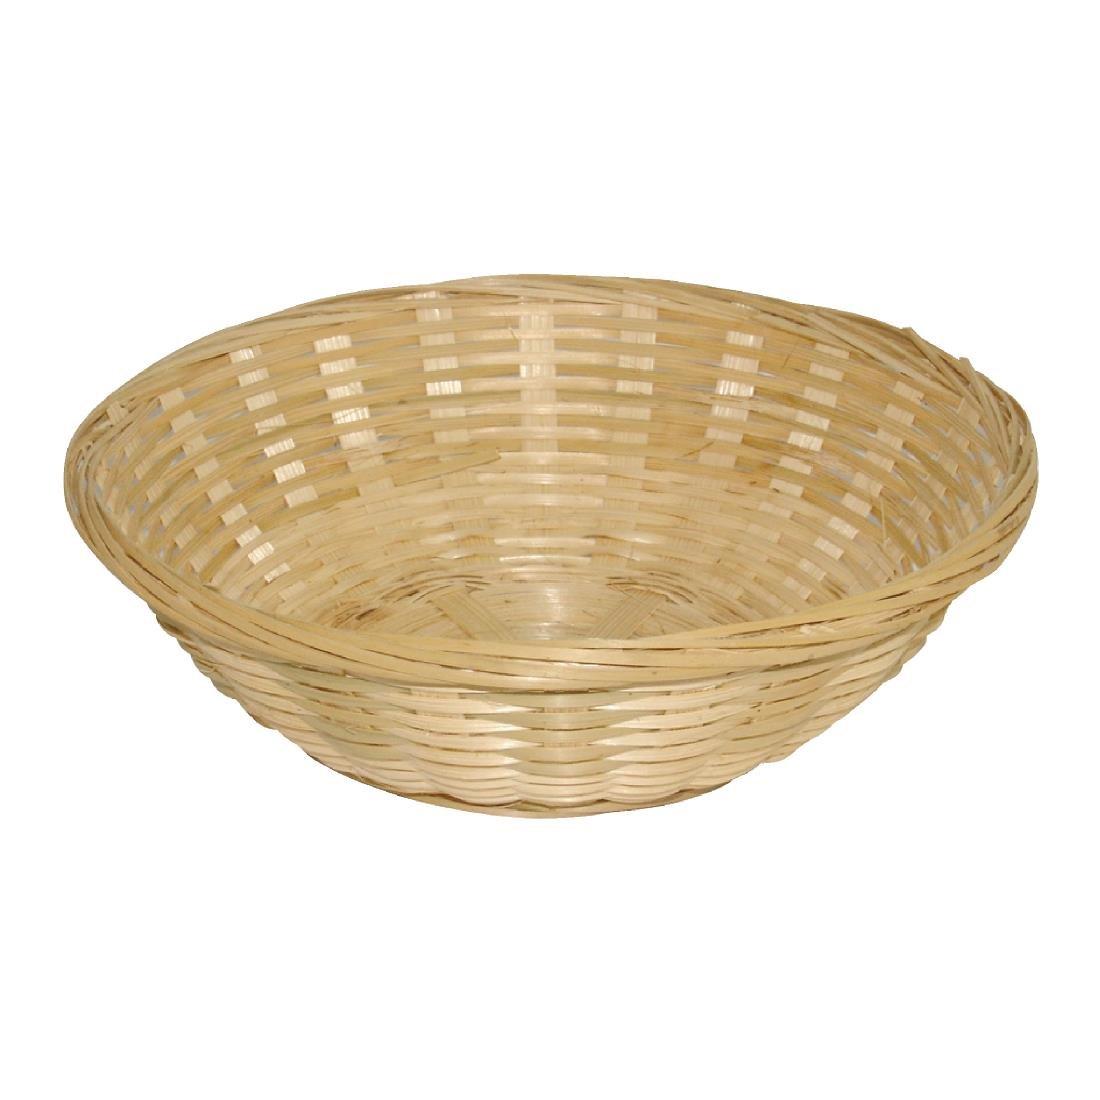 Y570 - Wicker Round Bread Basket